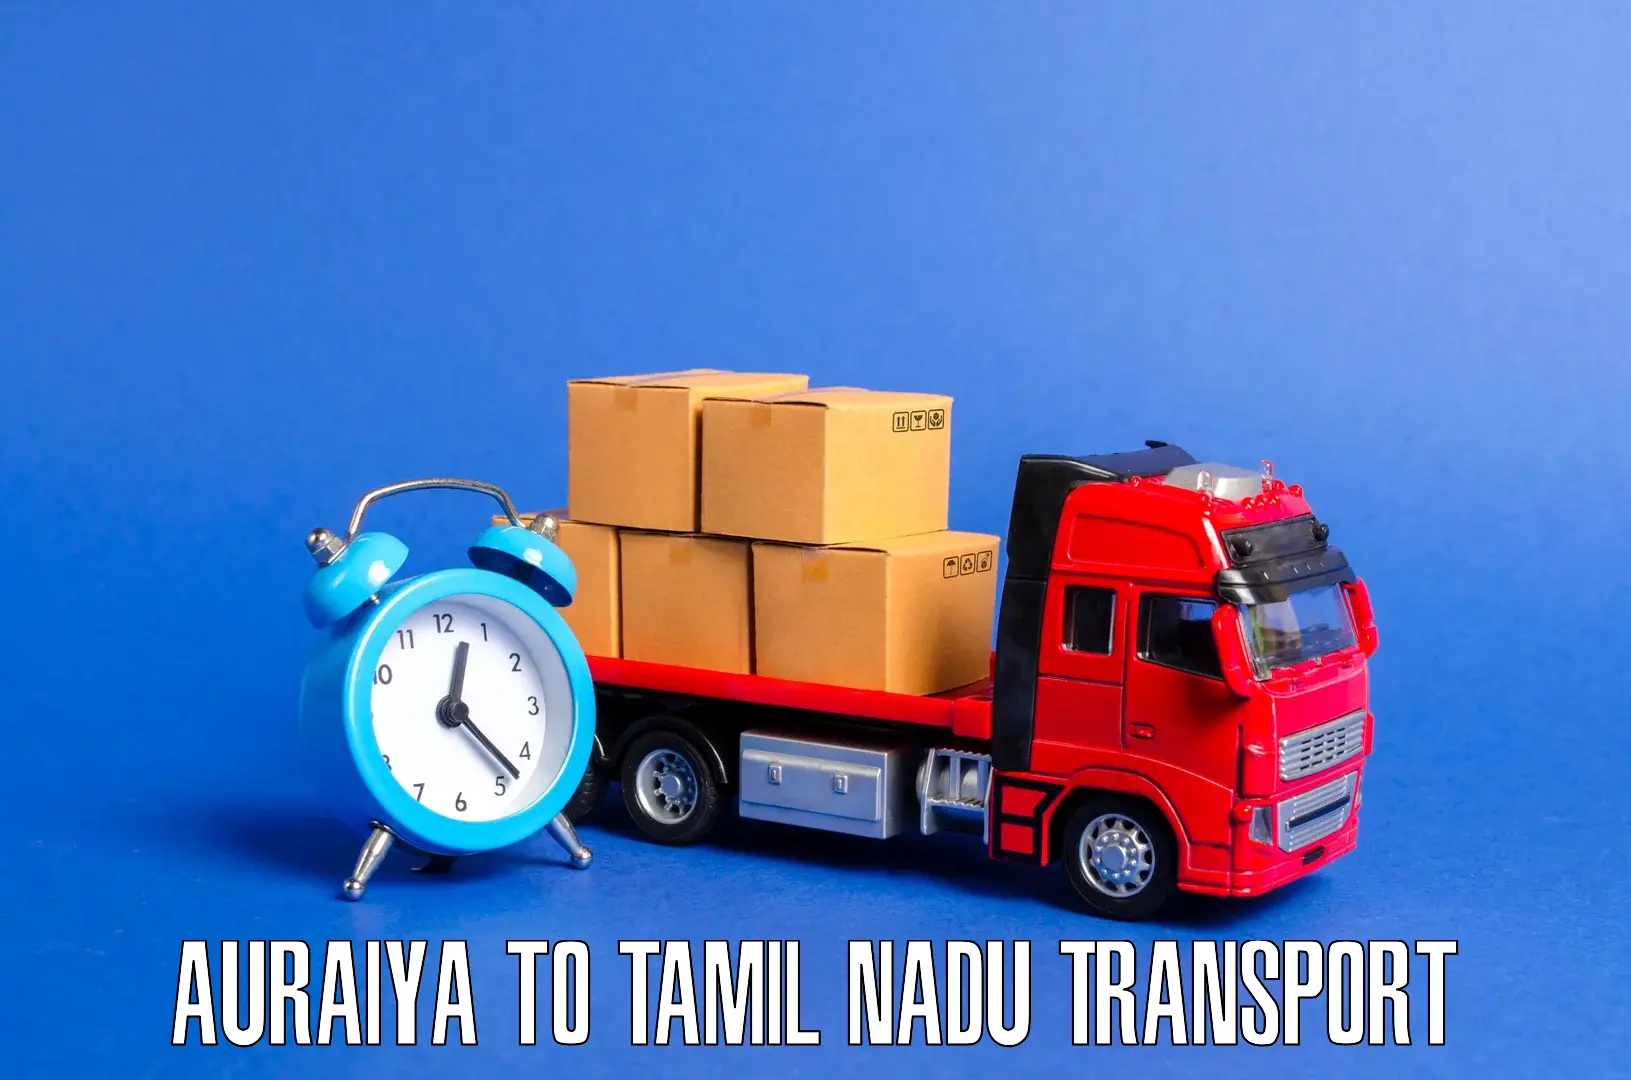 Cargo train transport services Auraiya to Tiruturaipundi